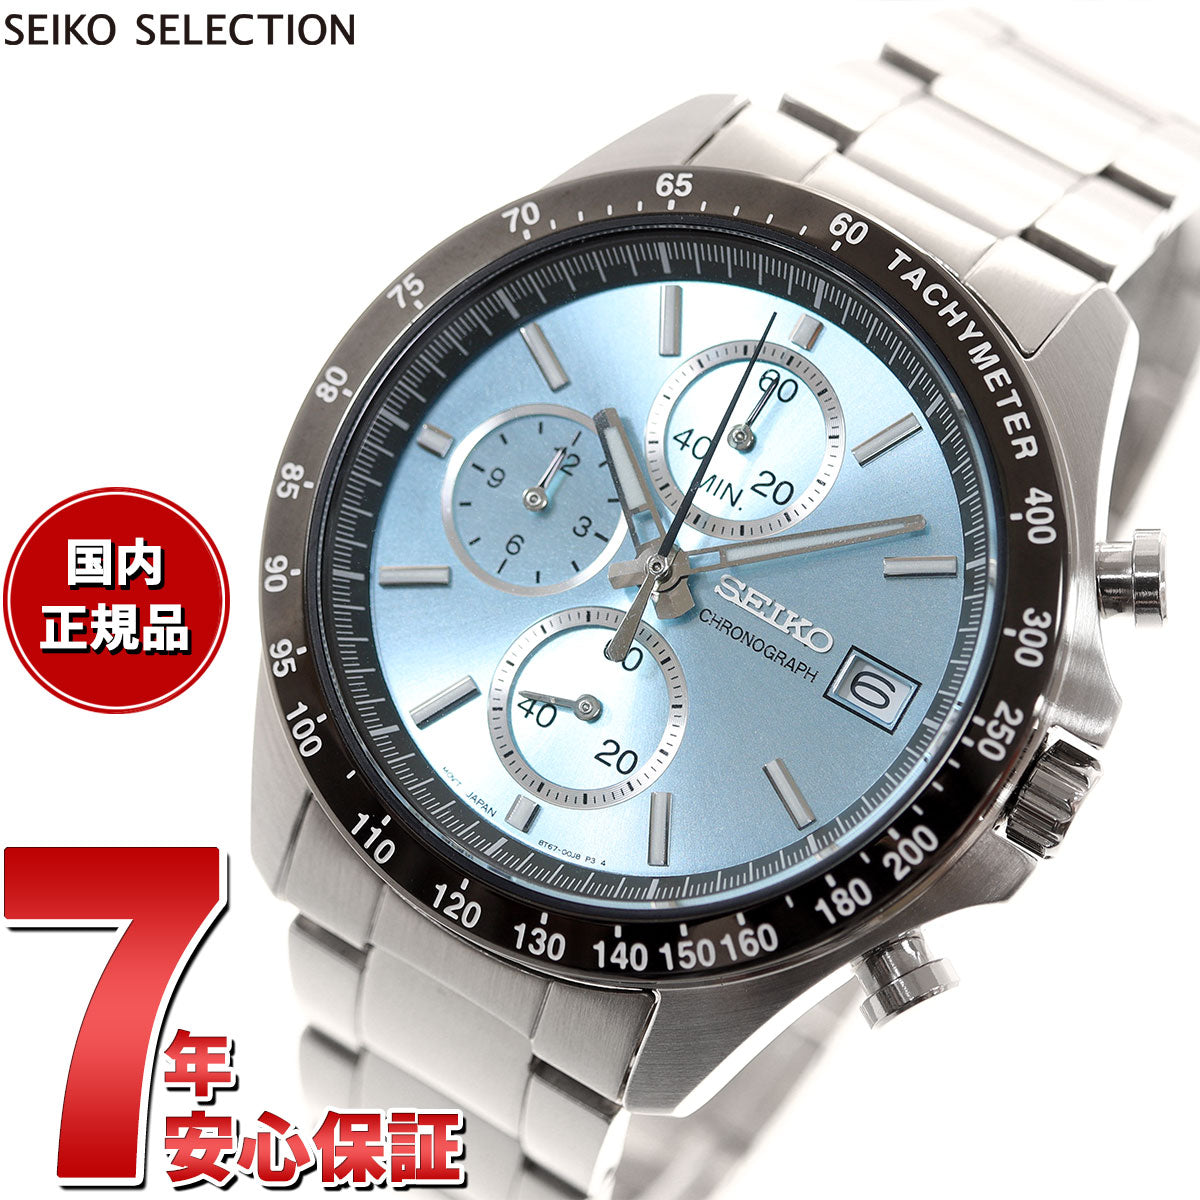 セイコー セレクション SEIKO SELECTION 8Tクロノ SBTR029 腕時計 メンズ クロノグラフ